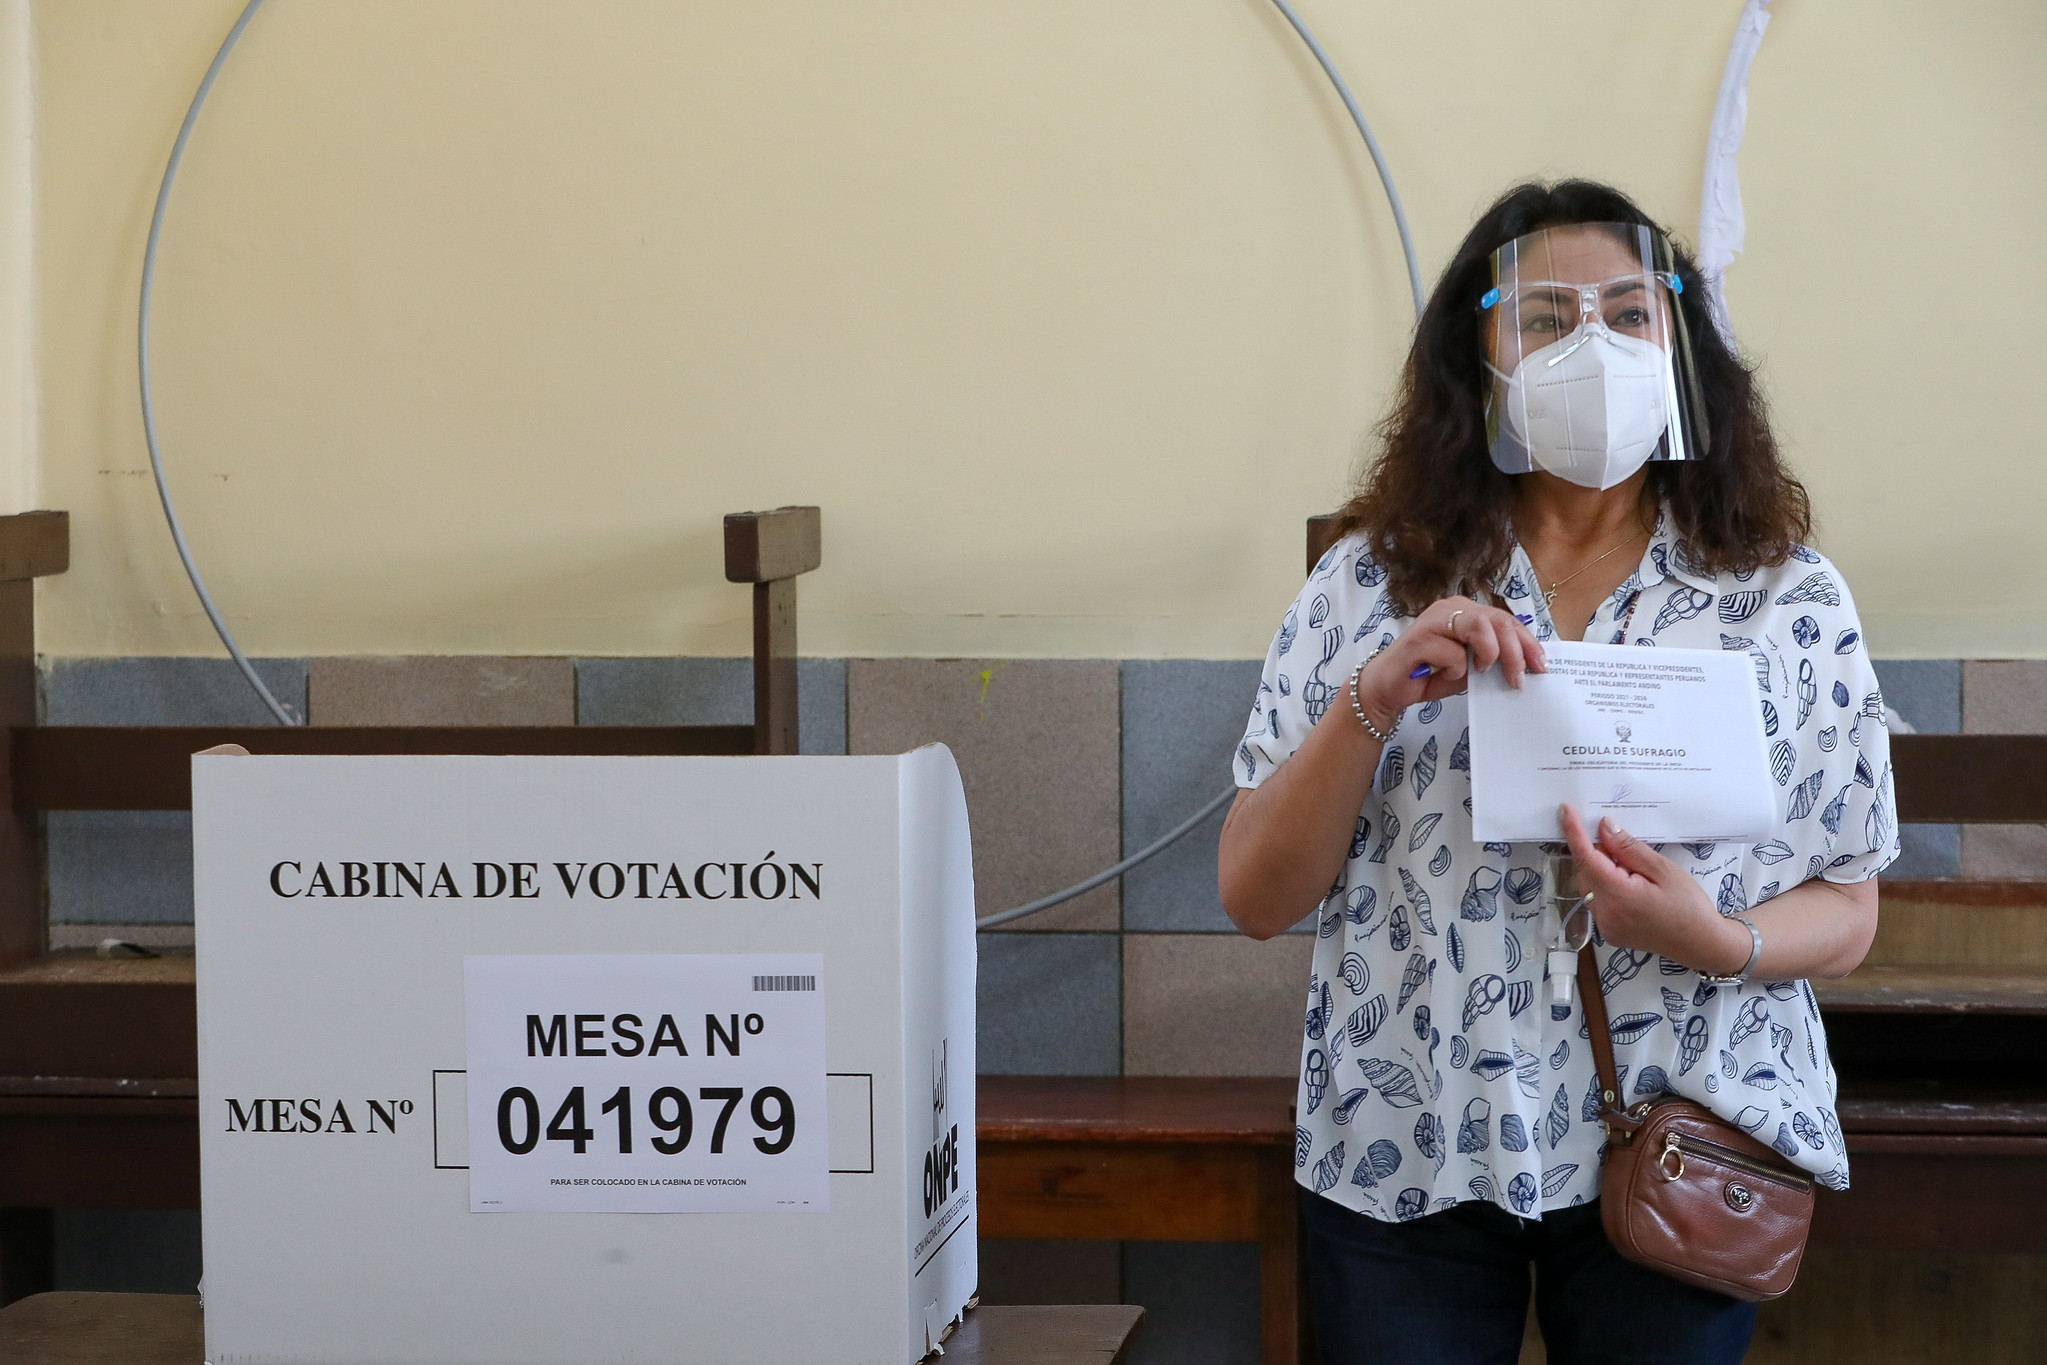 La tensión alrededor del resultado de las elecciones de Perú en 2021 fue aprovechada por la derecha para intentar quitarle legitimidad a las elecciones Foto: Consejo de Ministros de Perú / Flickr